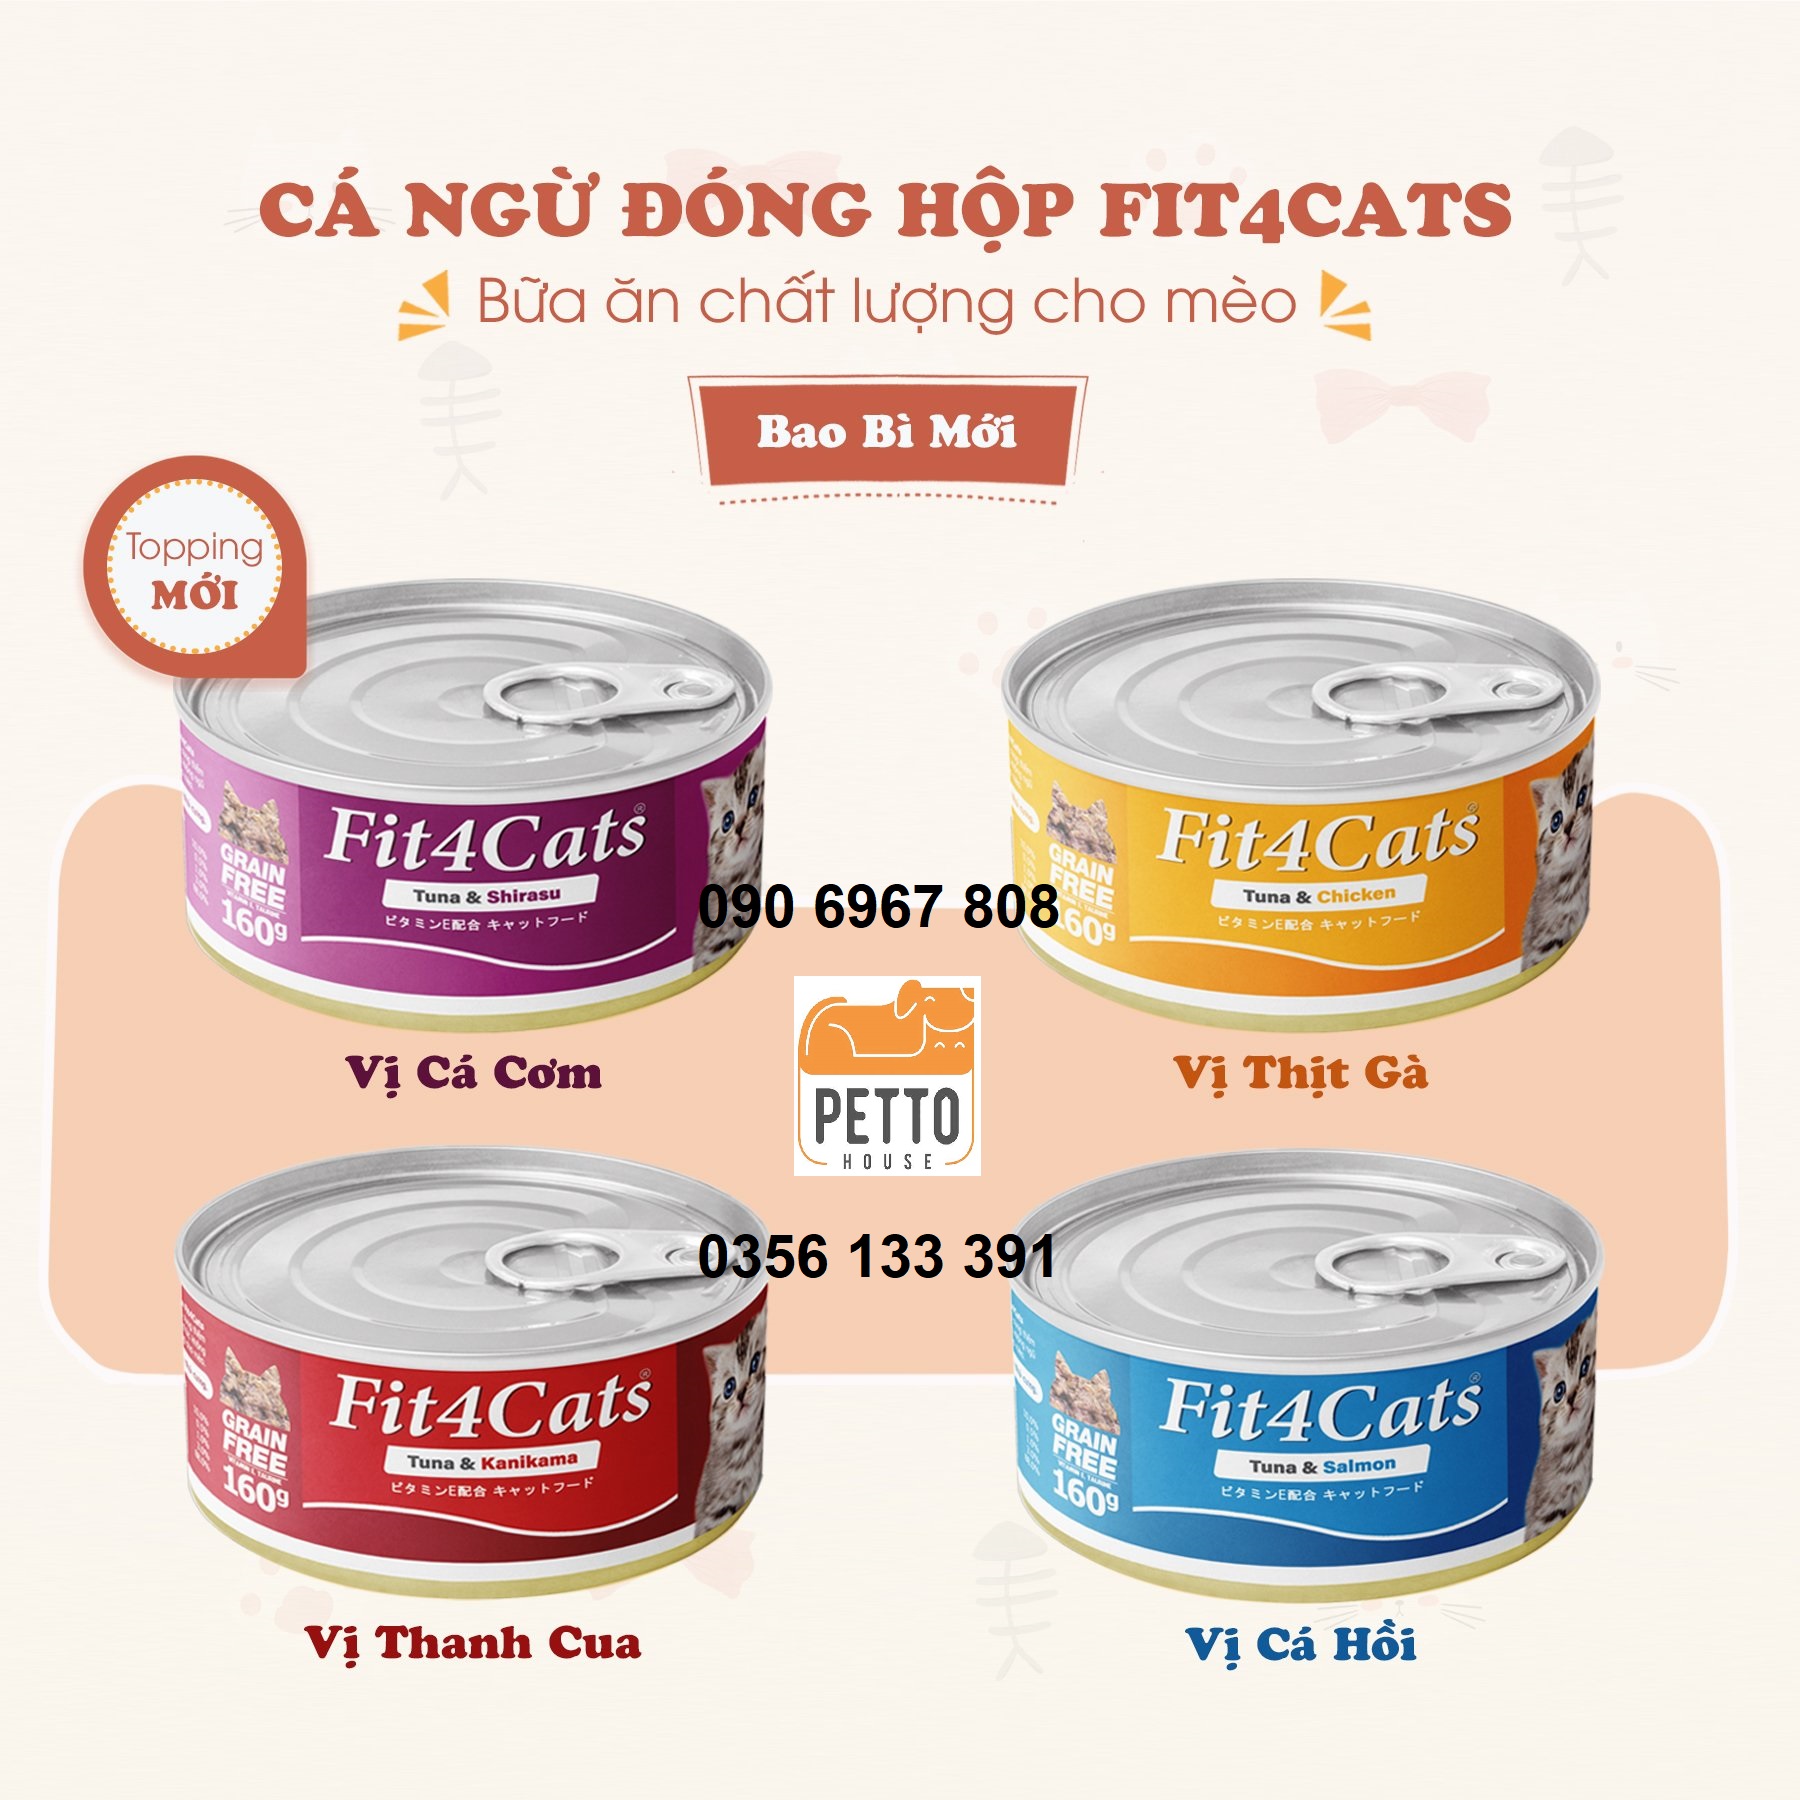 Cattyman Fit4cats tuna 160g thức ăn ướt pa tê cá ngừ cho mèo mọi lứa tuổi